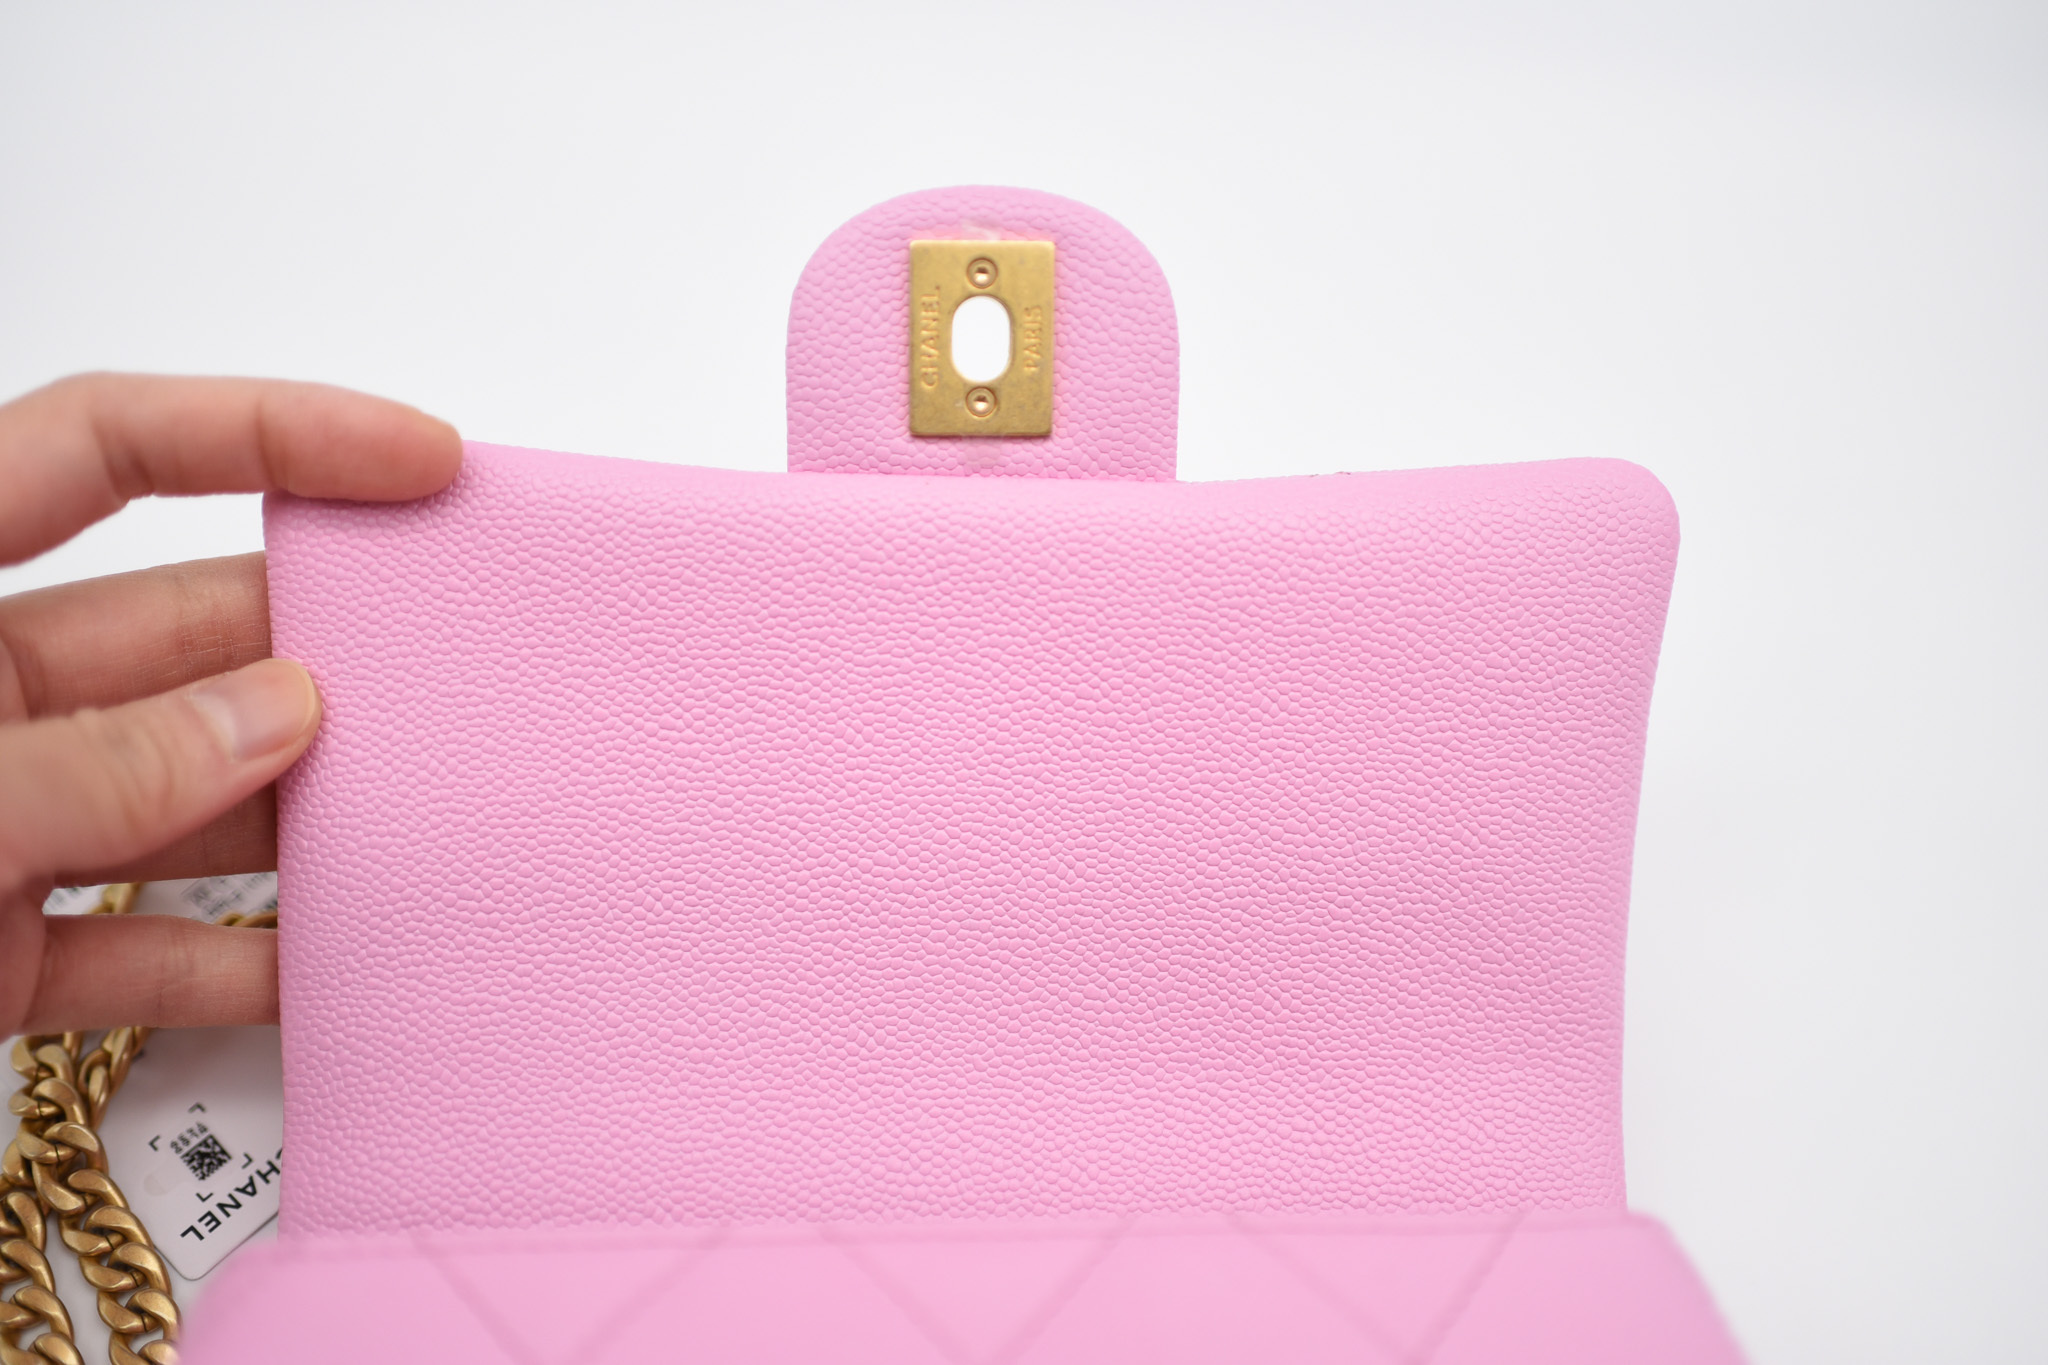 Chanel Seasonal Sweetheart Mini Flap, Pink Caviar Leather, Gold Hardware,  New in Box MA001